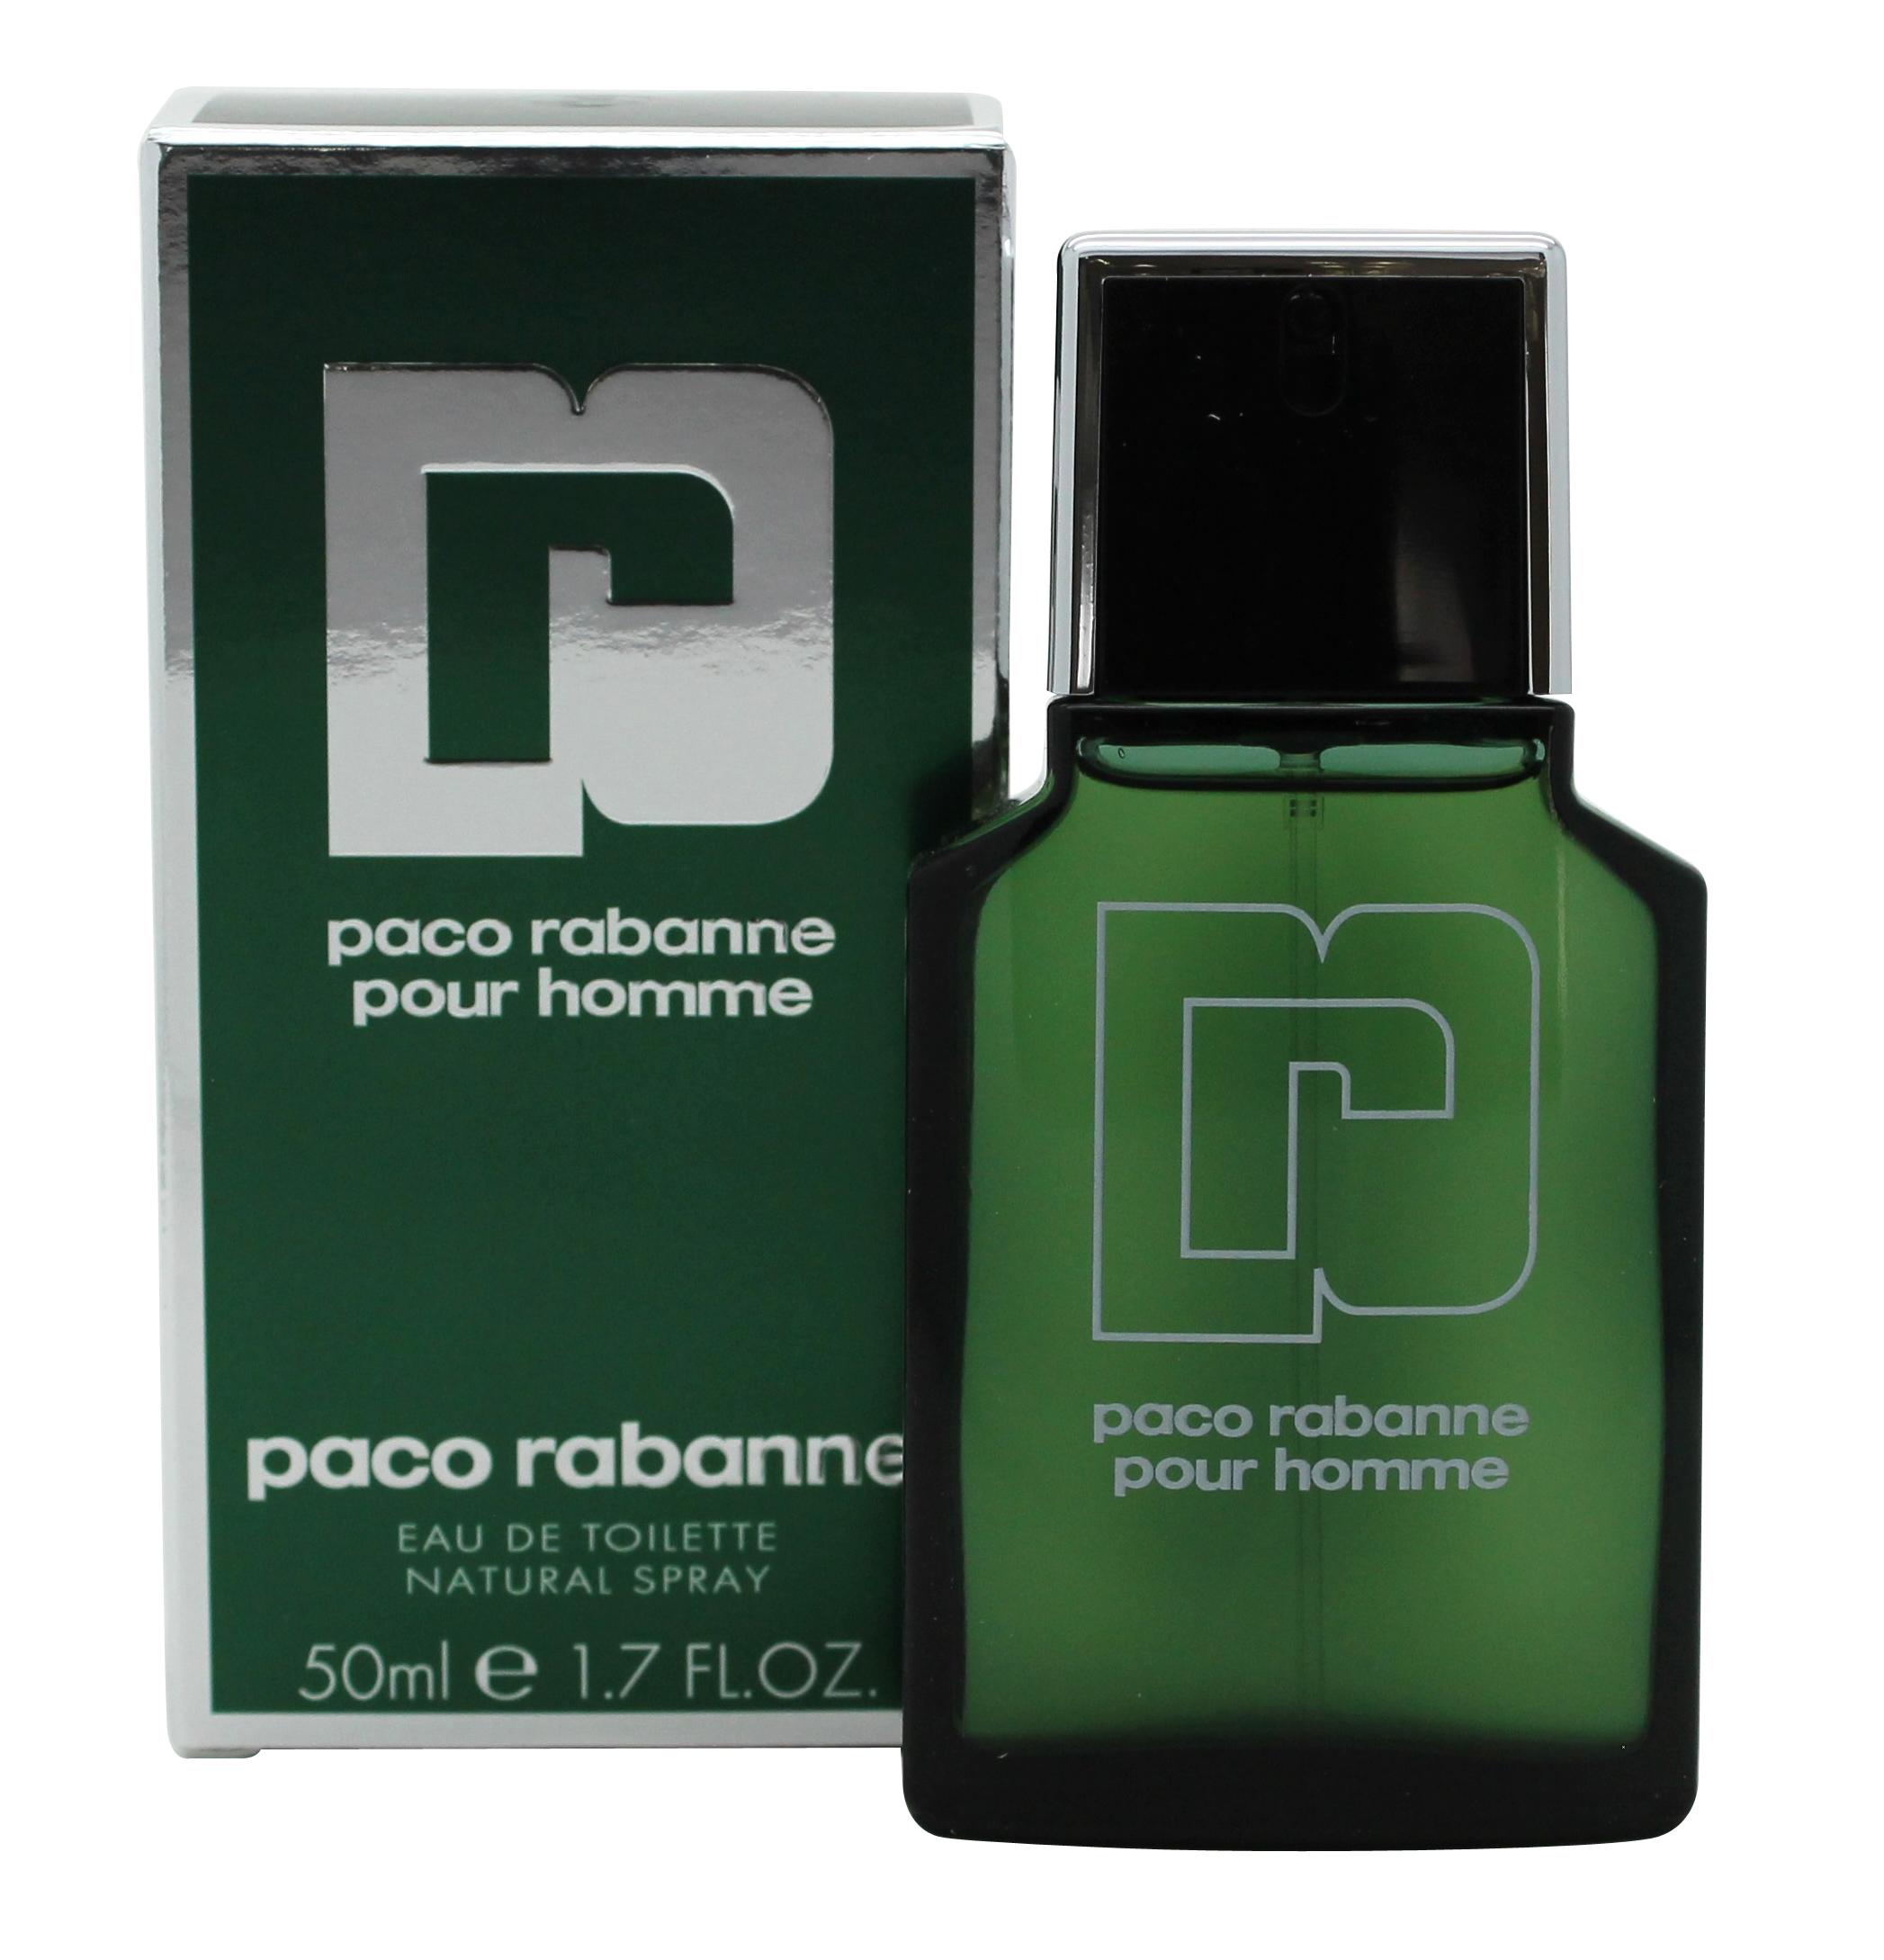 Paco Rabanne Pour Homme Eau de Toilette 50ml Spray